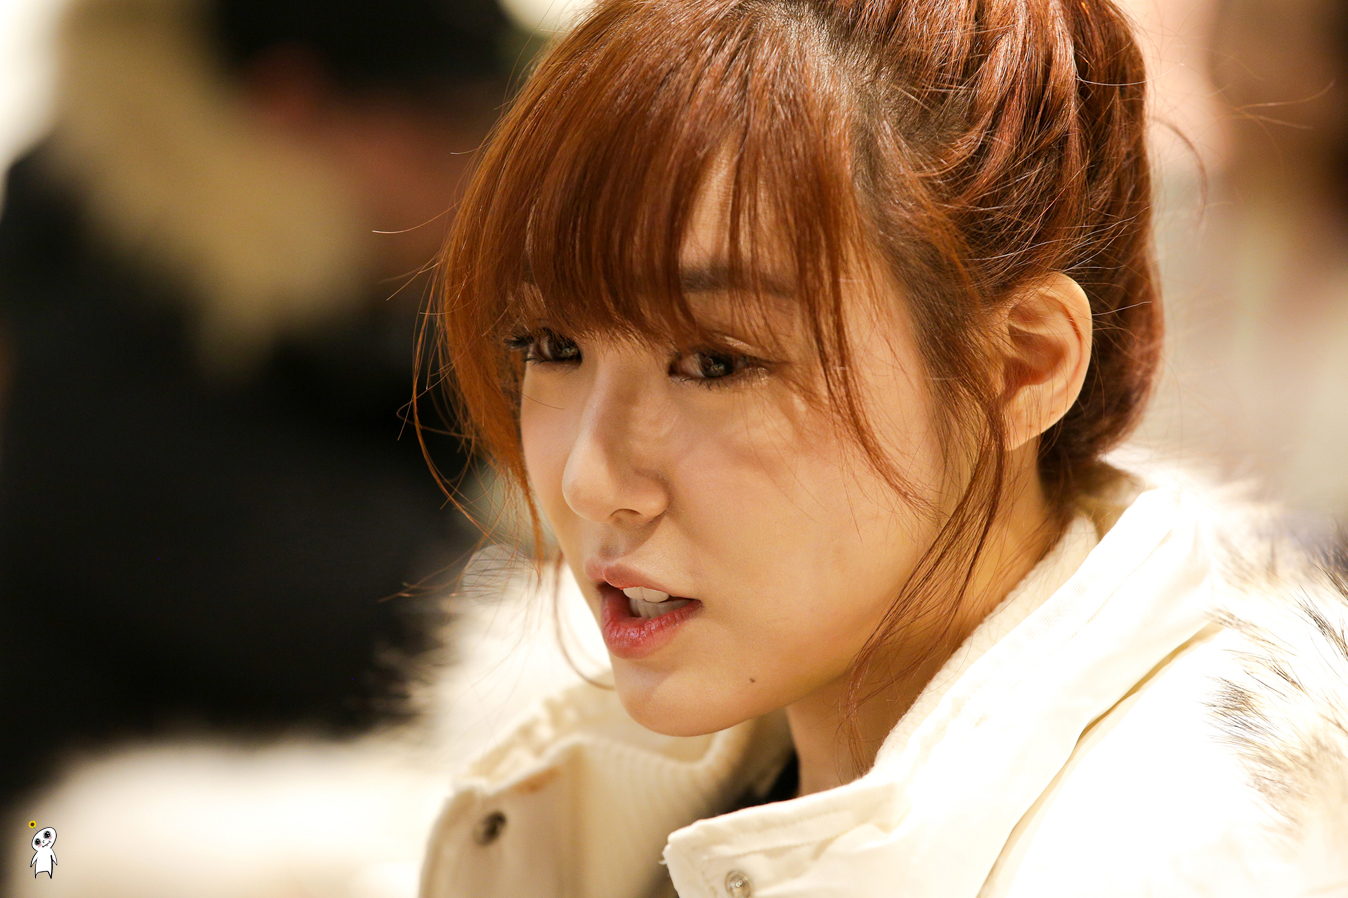 [PIC][28-11-2013]Tiffany ghé thăm cửa hàng "QUA" ở Hyundai Department Store vào trưa nay - Page 2 224DF63D52980C890F0A4B